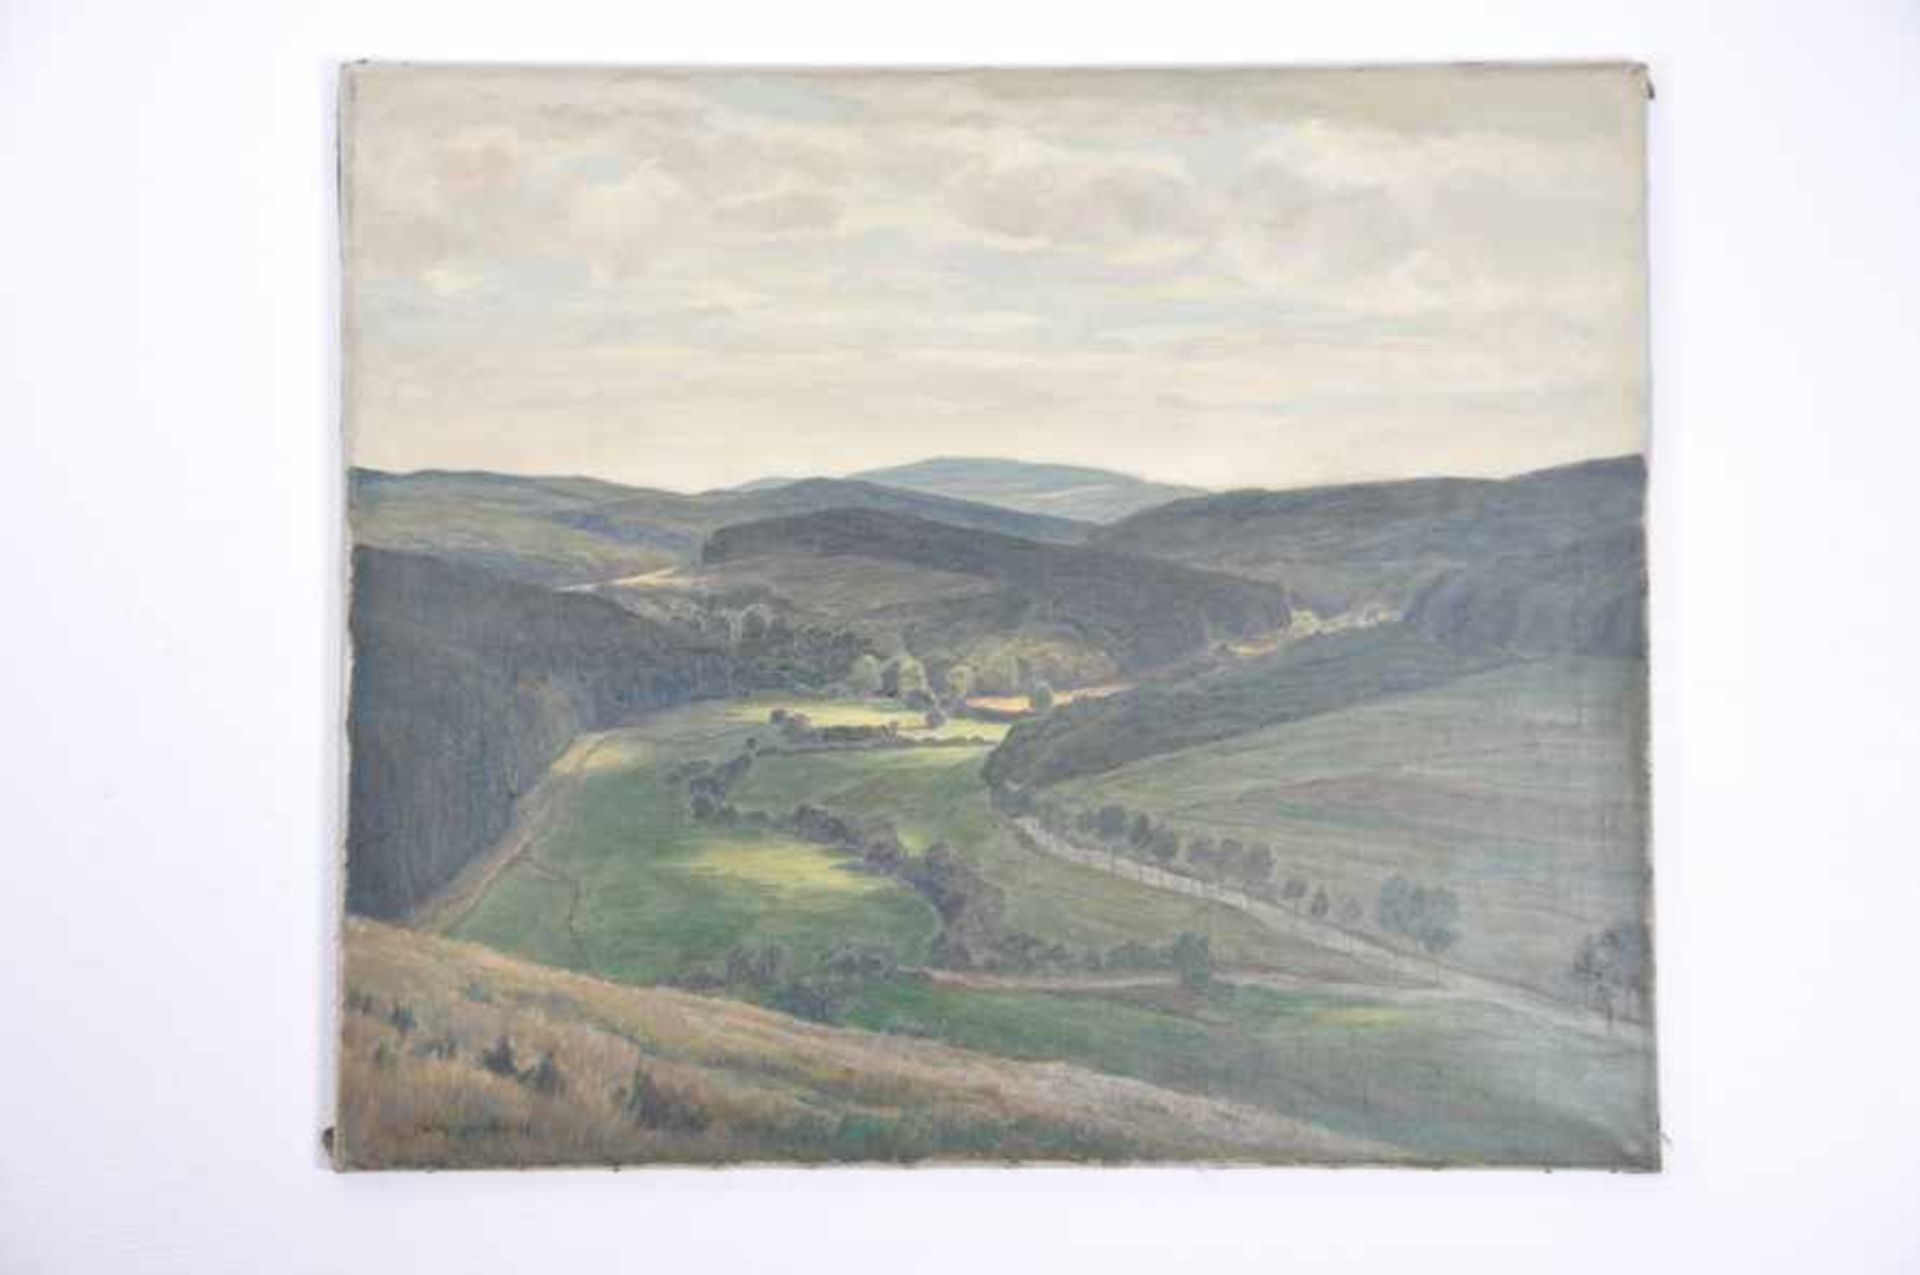 Landschaft mit Wolkenschatten (Sauerland). Willy ter Hell (02.12.1883 Norden - 01.07.1947